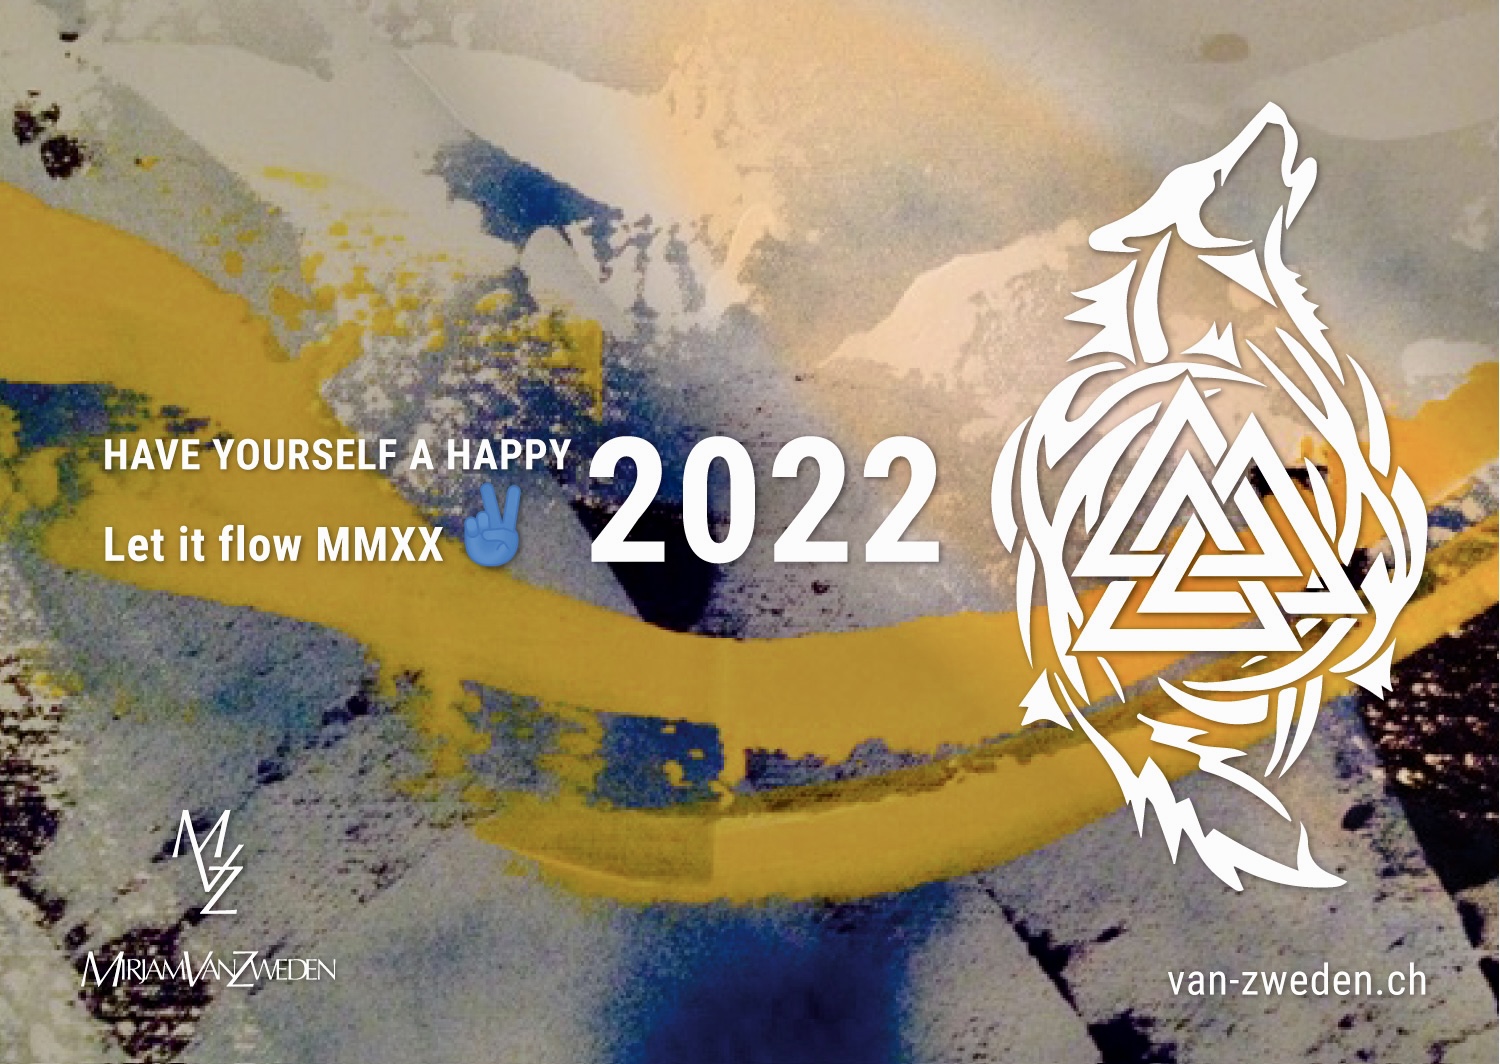 Van-Zweden - let it flow 2022